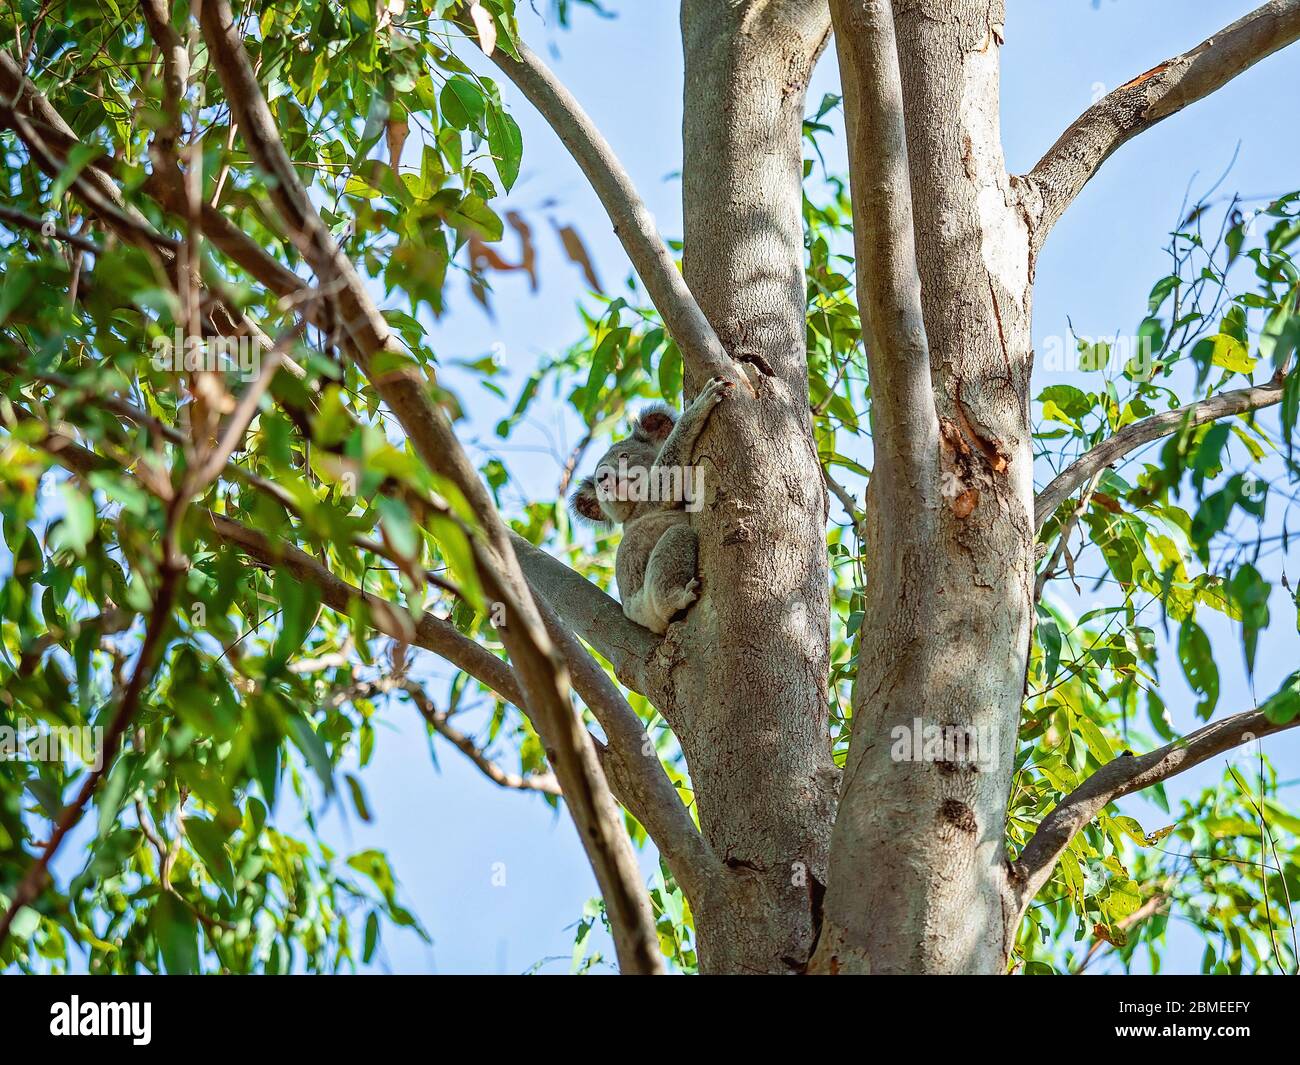 Un koala australien assis sur la branche d'un arbre dans son environnement indigène, la forêt d'eucalyptus Banque D'Images